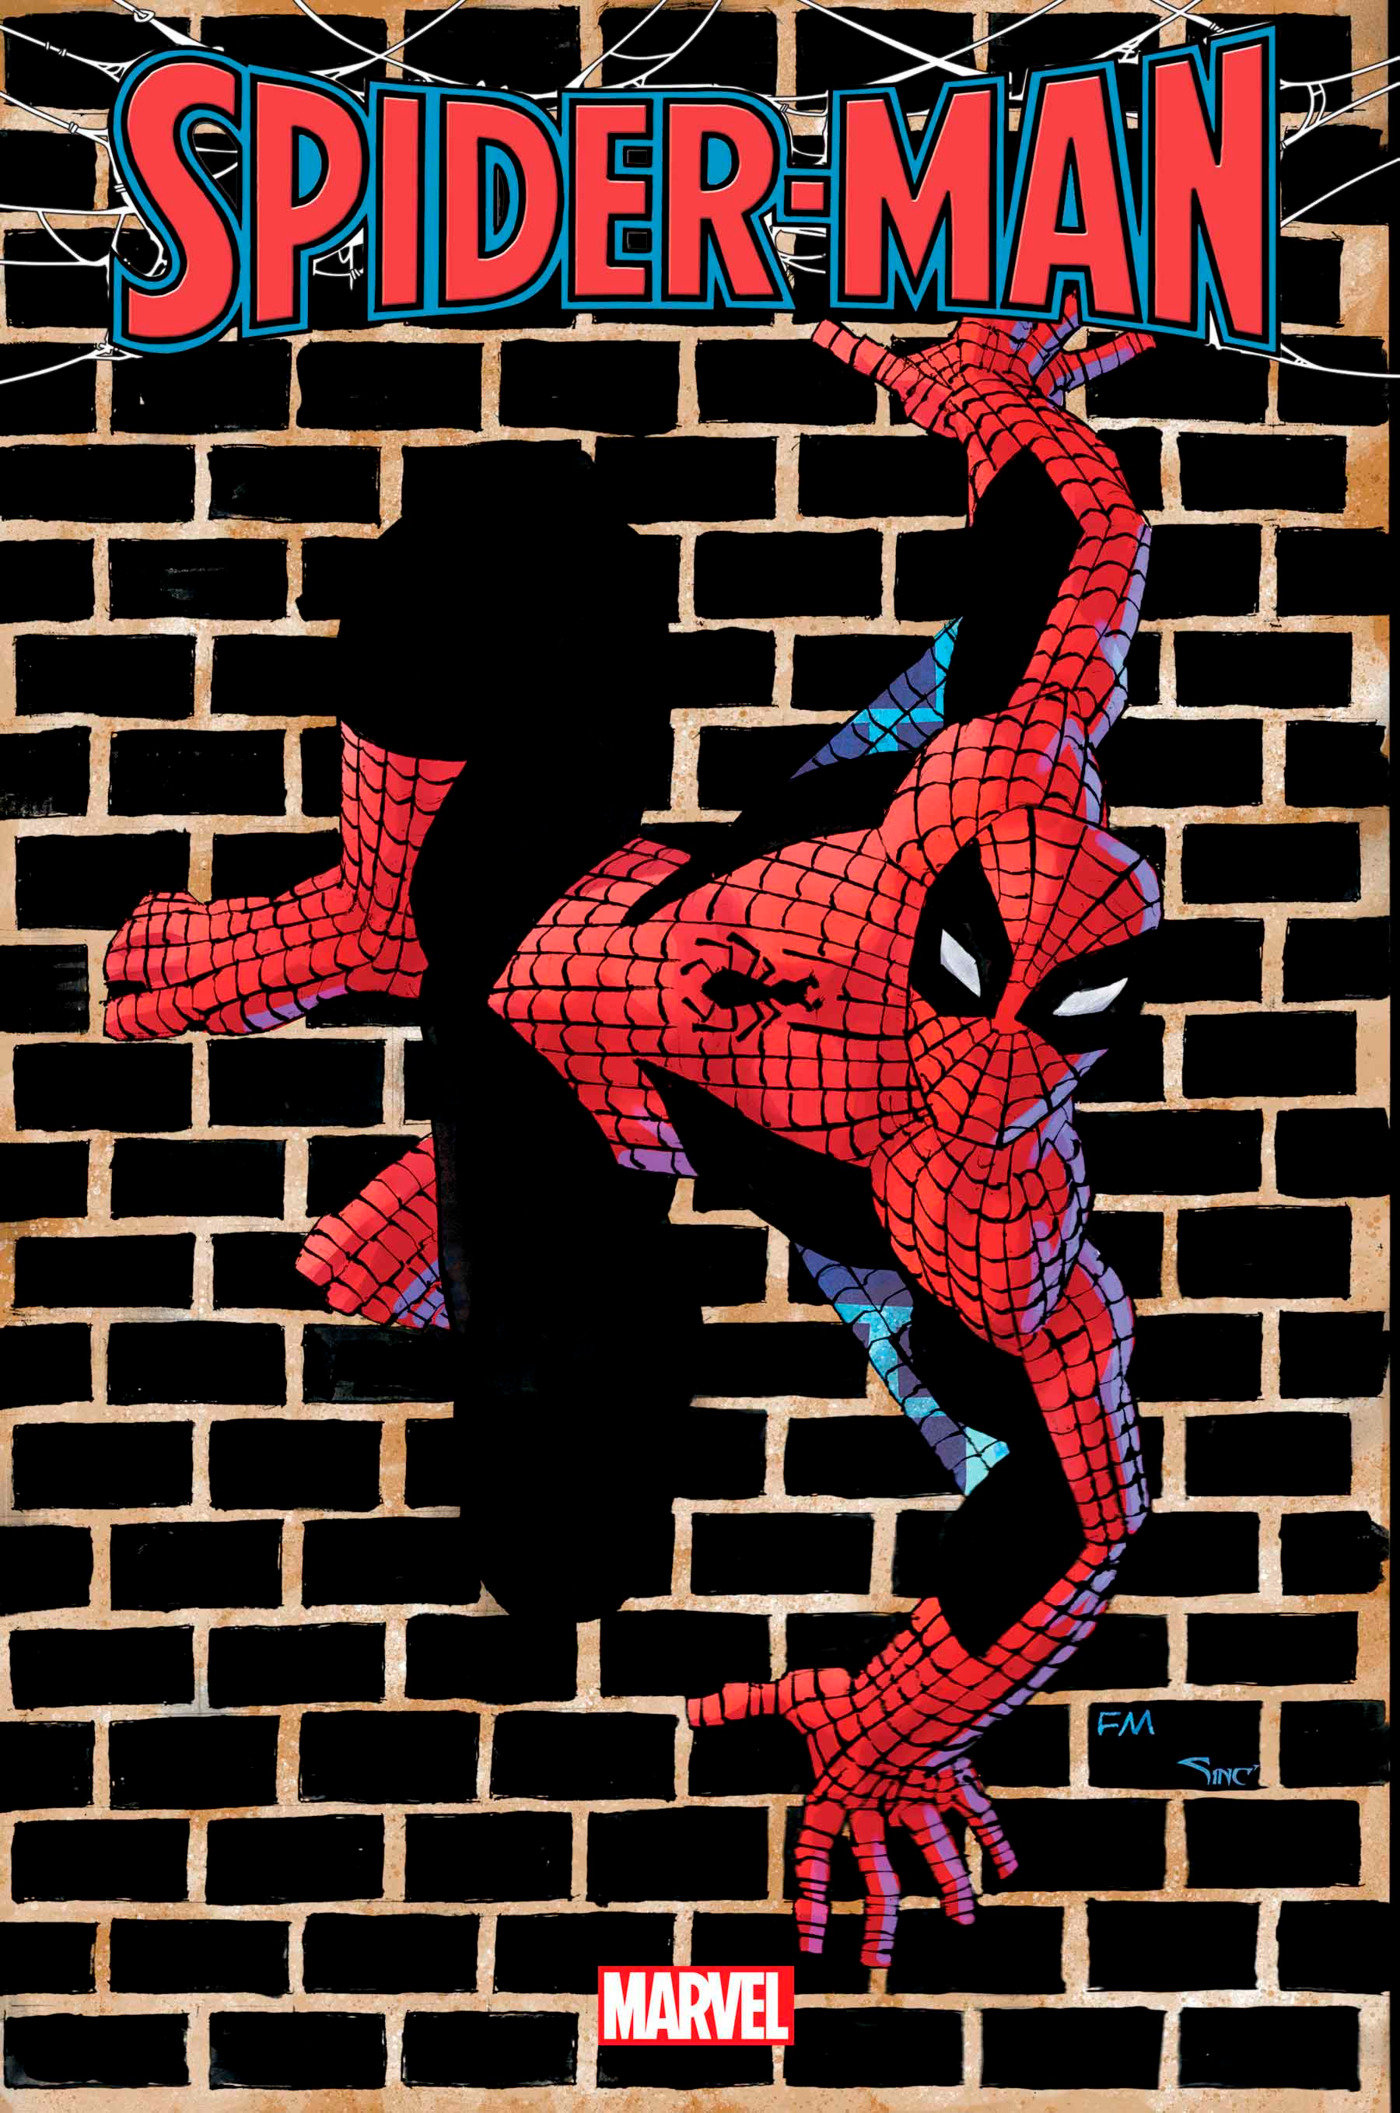 Spider-Man #1 1 for 50 Incentive Frank Miller Variant